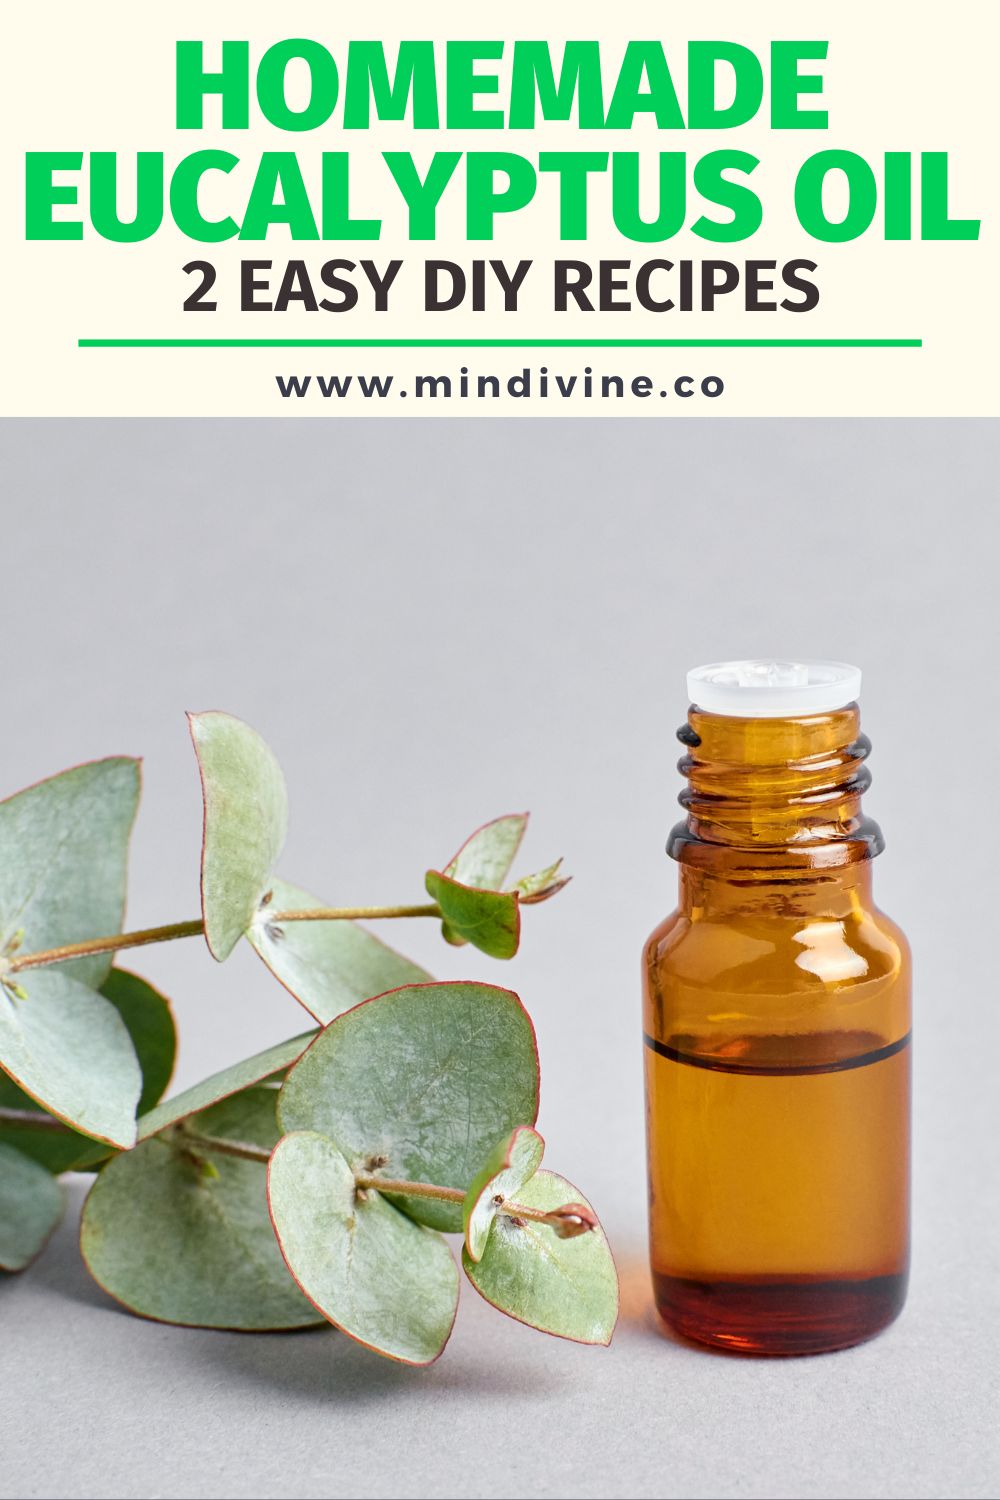 How to make eucalyptus oil with homemade recipes.